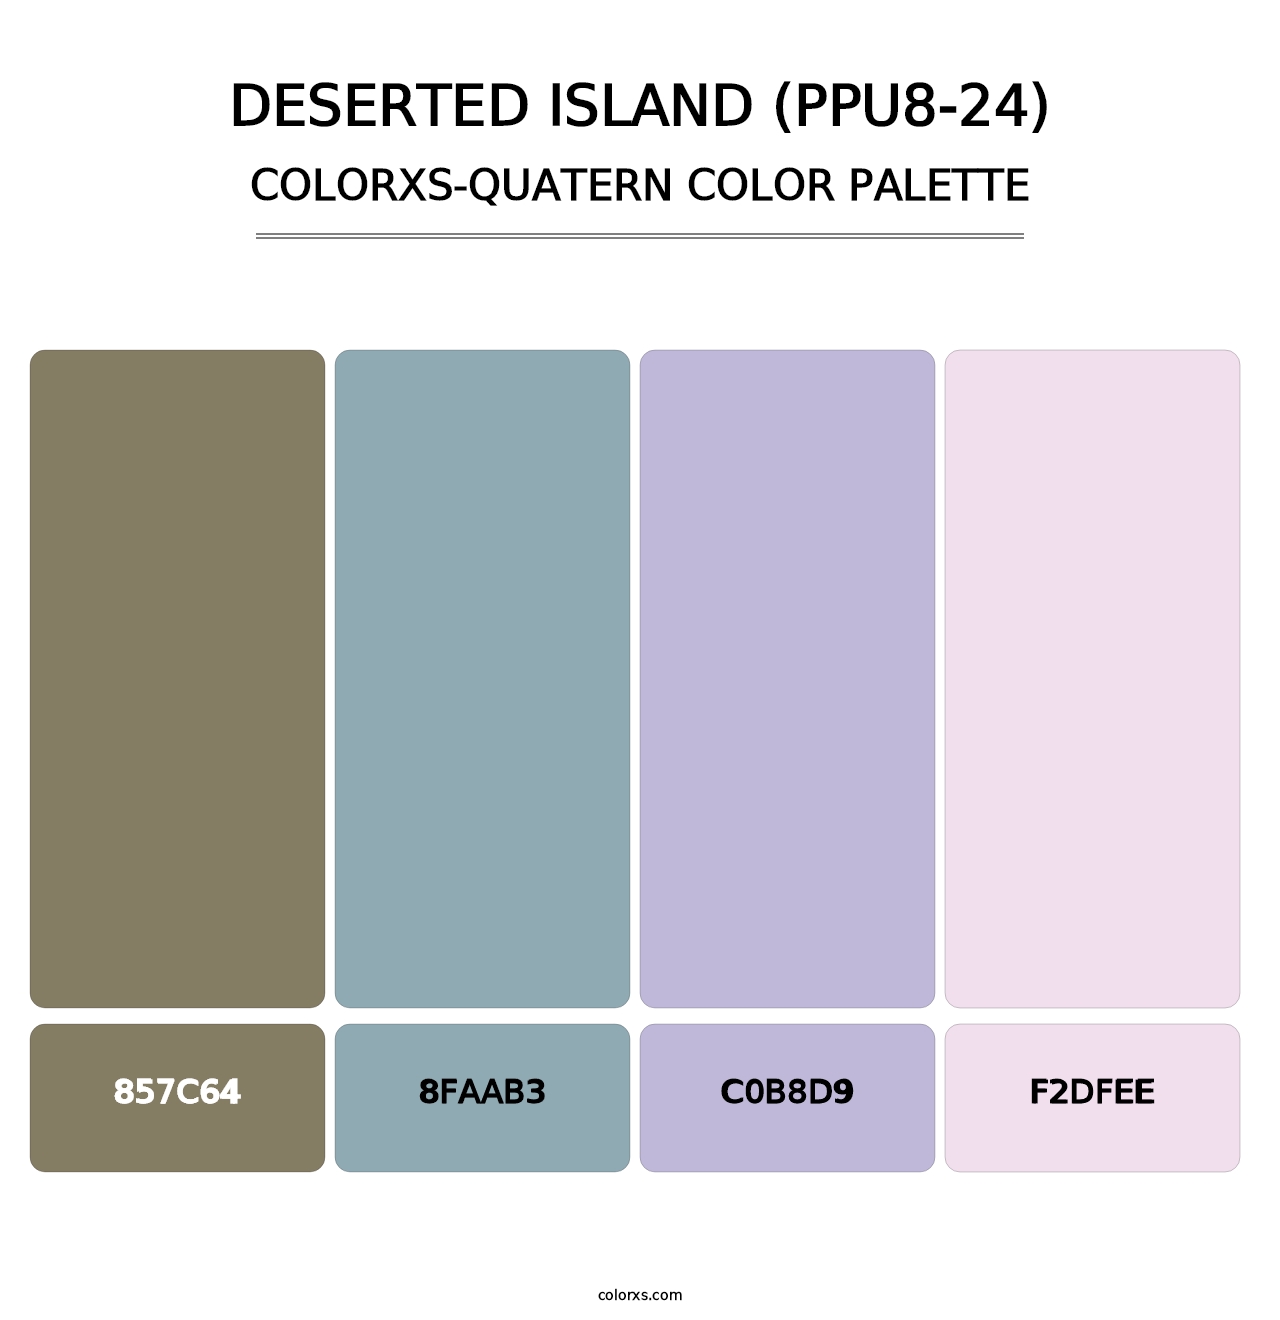 Deserted Island (PPU8-24) - Colorxs Quatern Palette